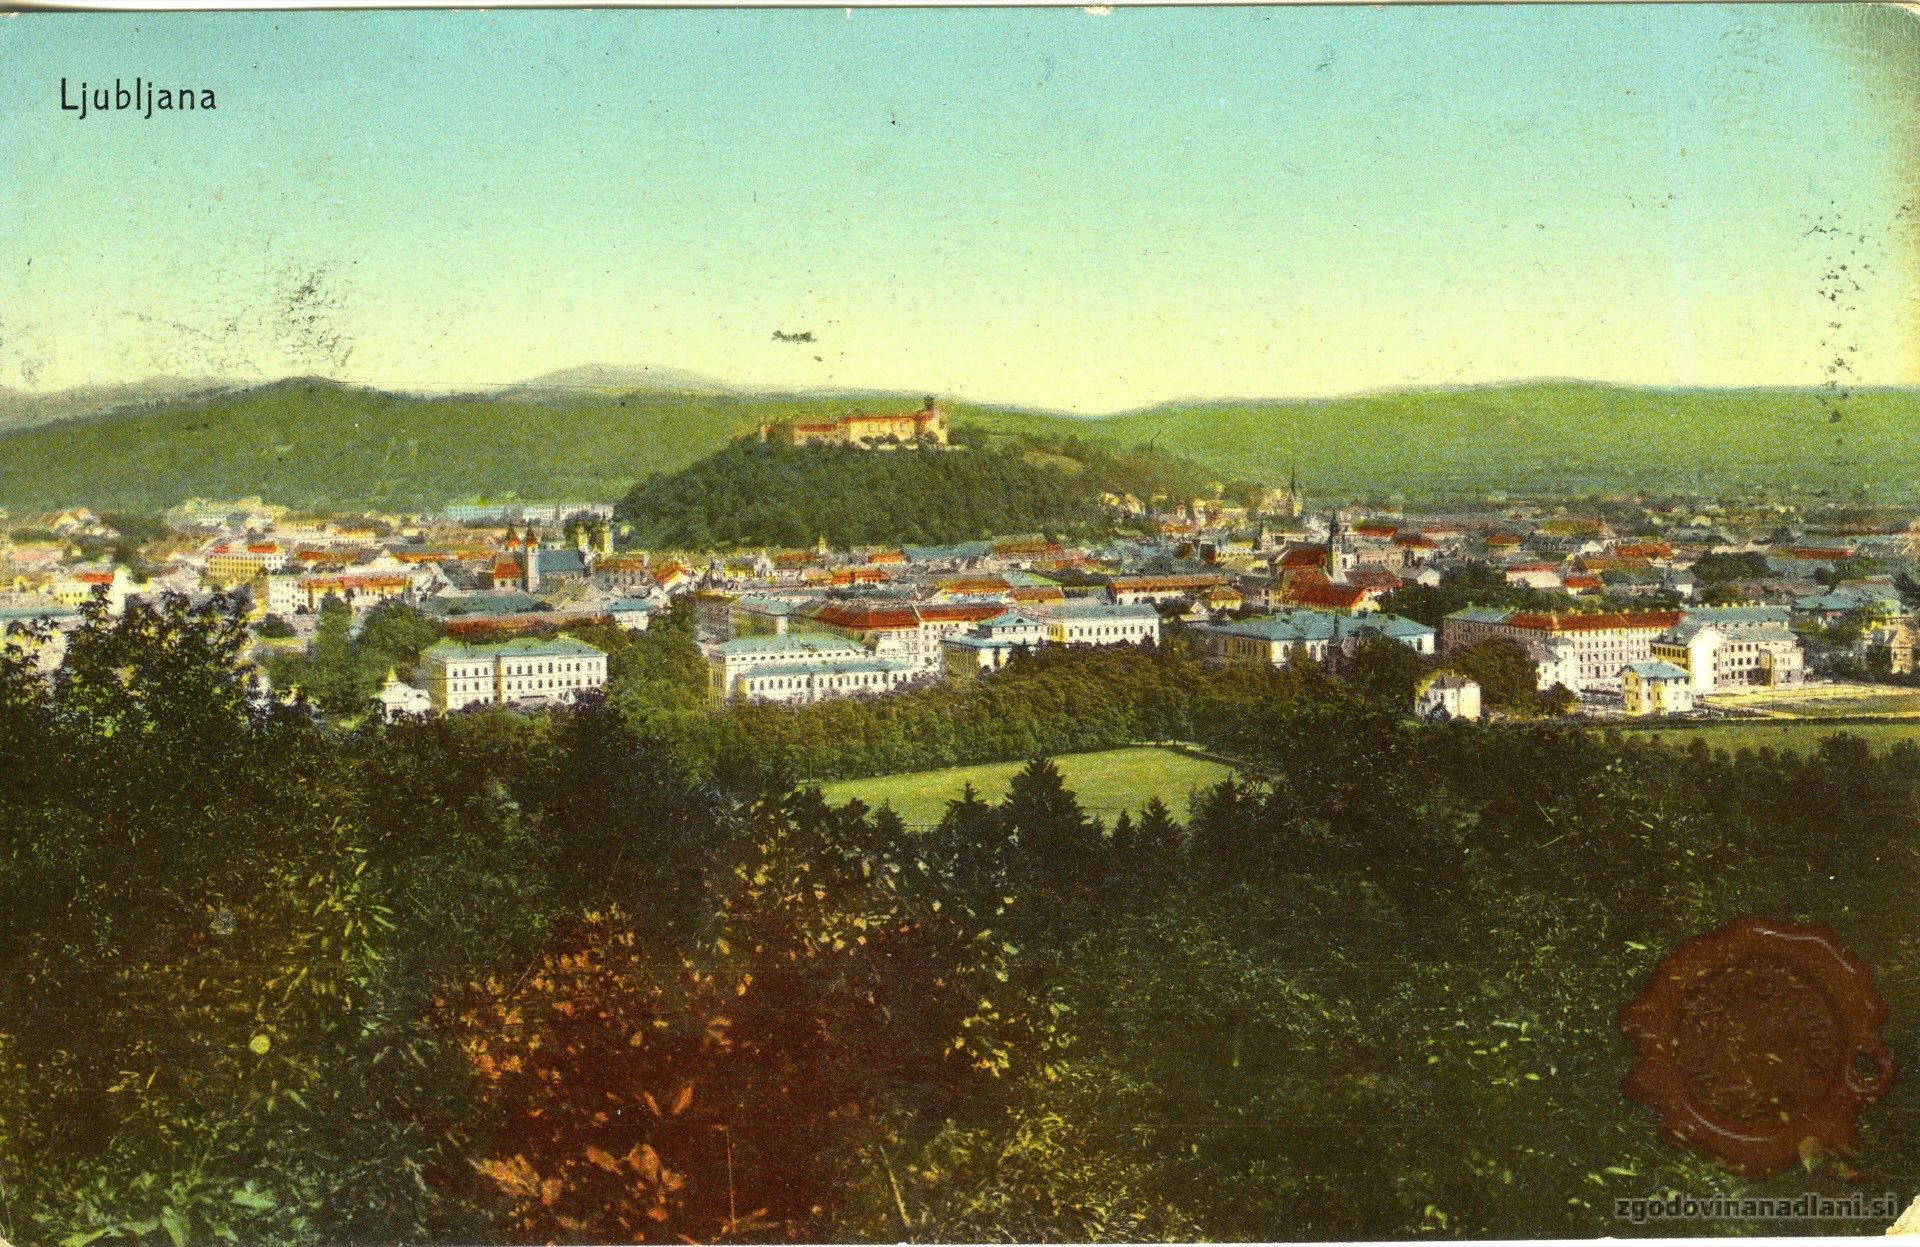 Ljubljana_Rožnik_Grad_1910